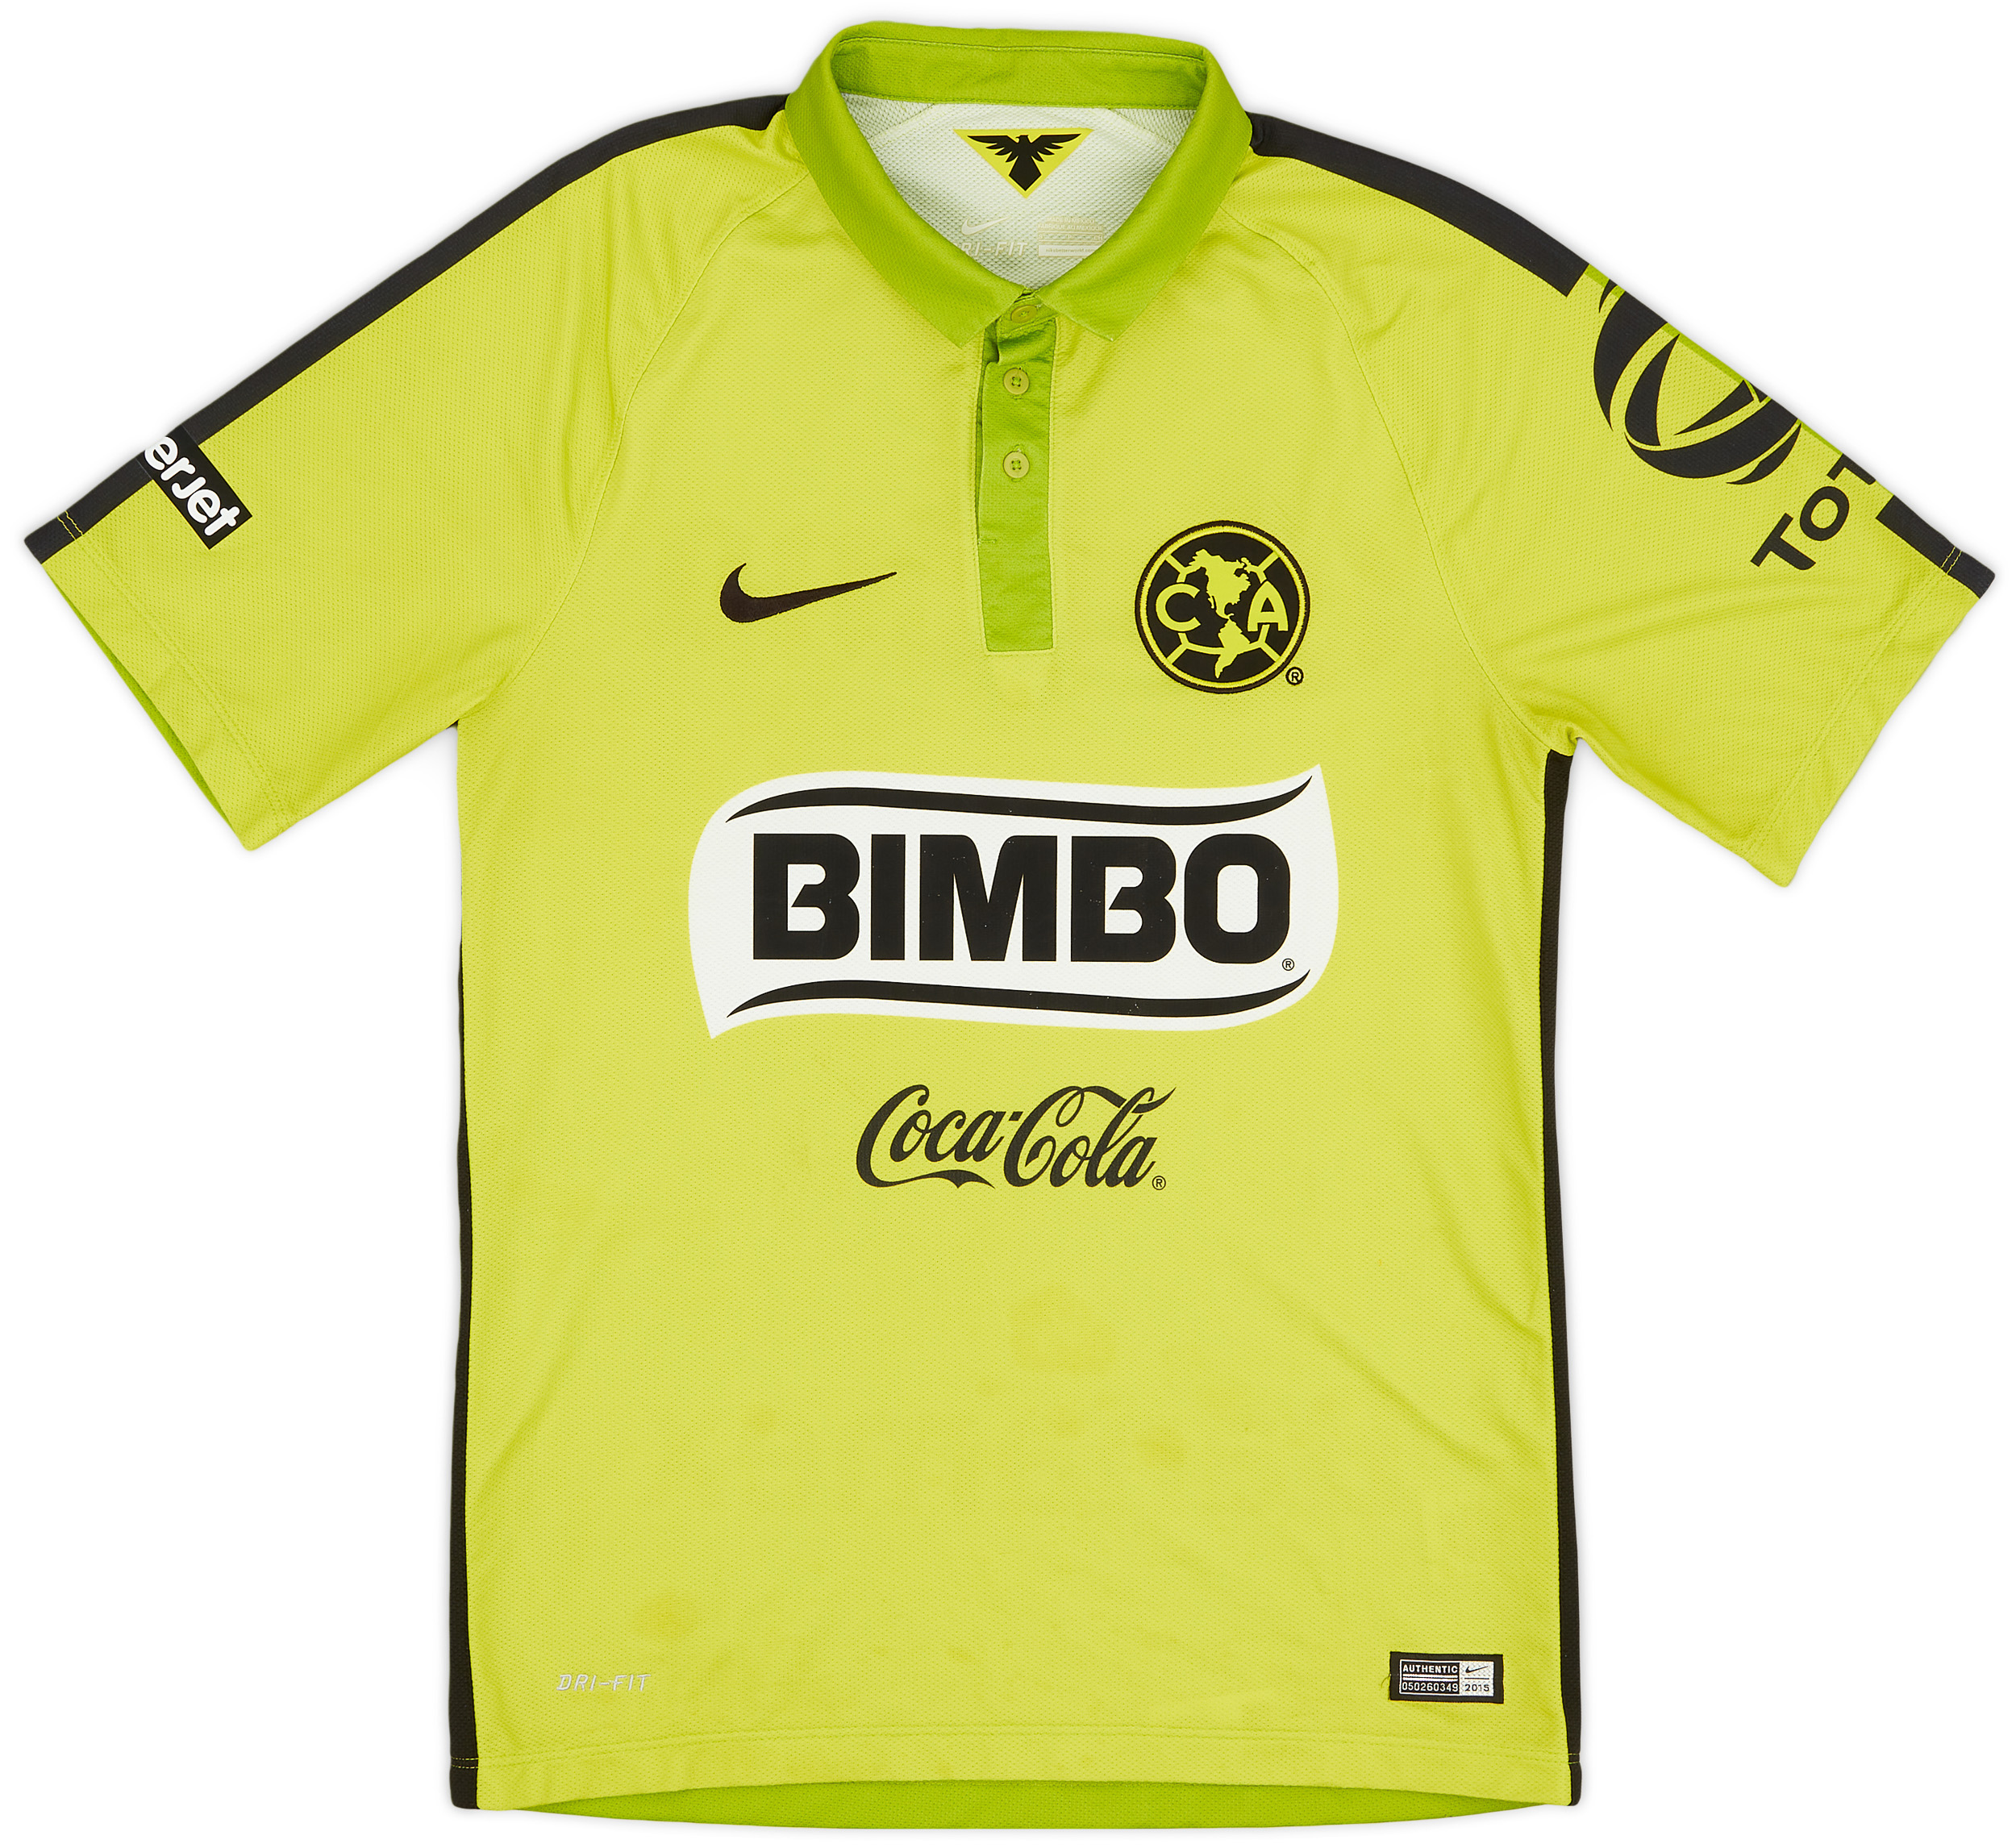 Club America  Terceira camisa (Original)